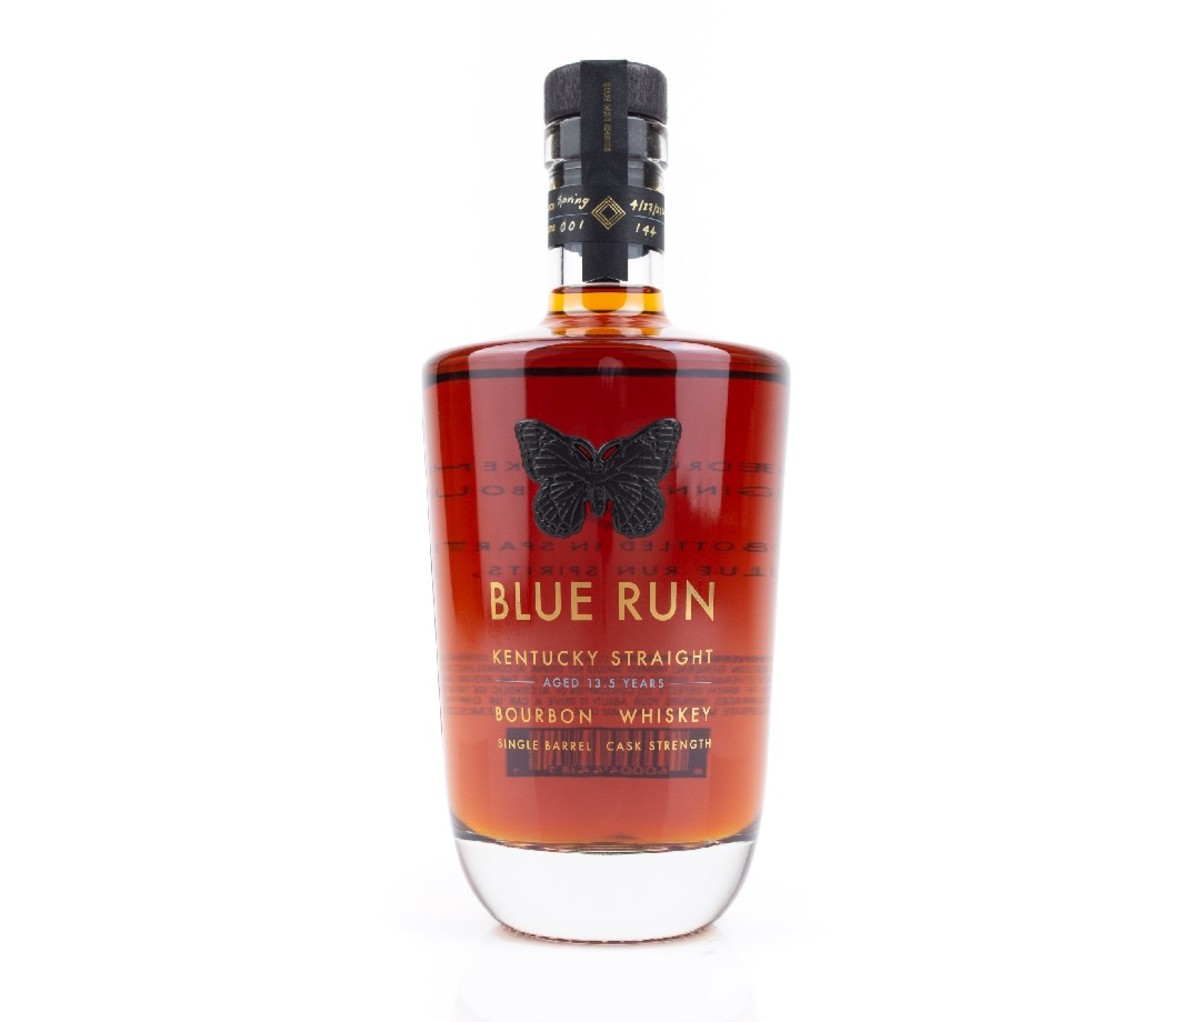 A bottle of Blue Run Rye.